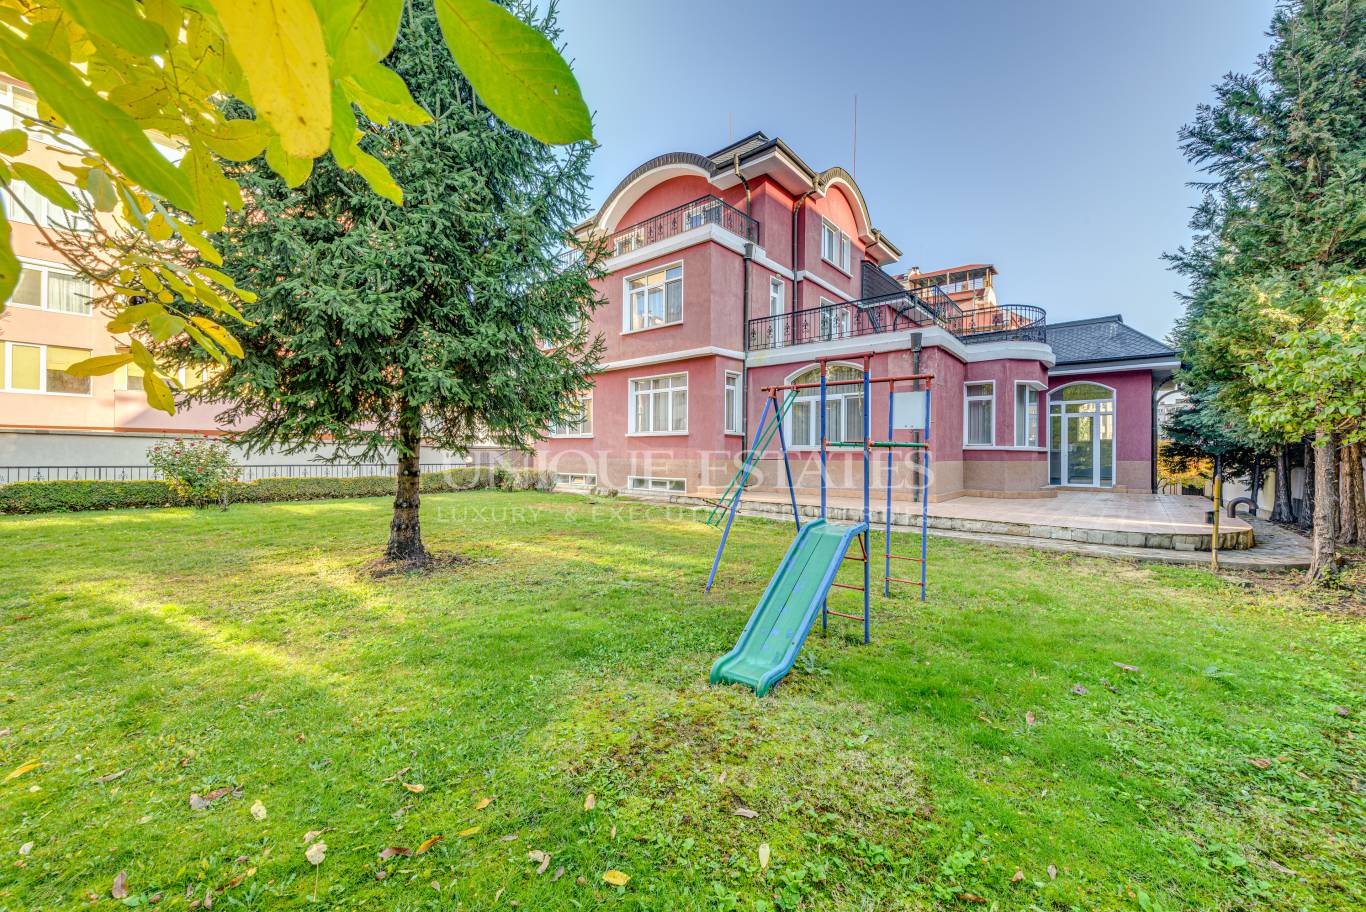 Къща под наем в София, Манастирски ливади - запад - код на имота: N17866 - image 1